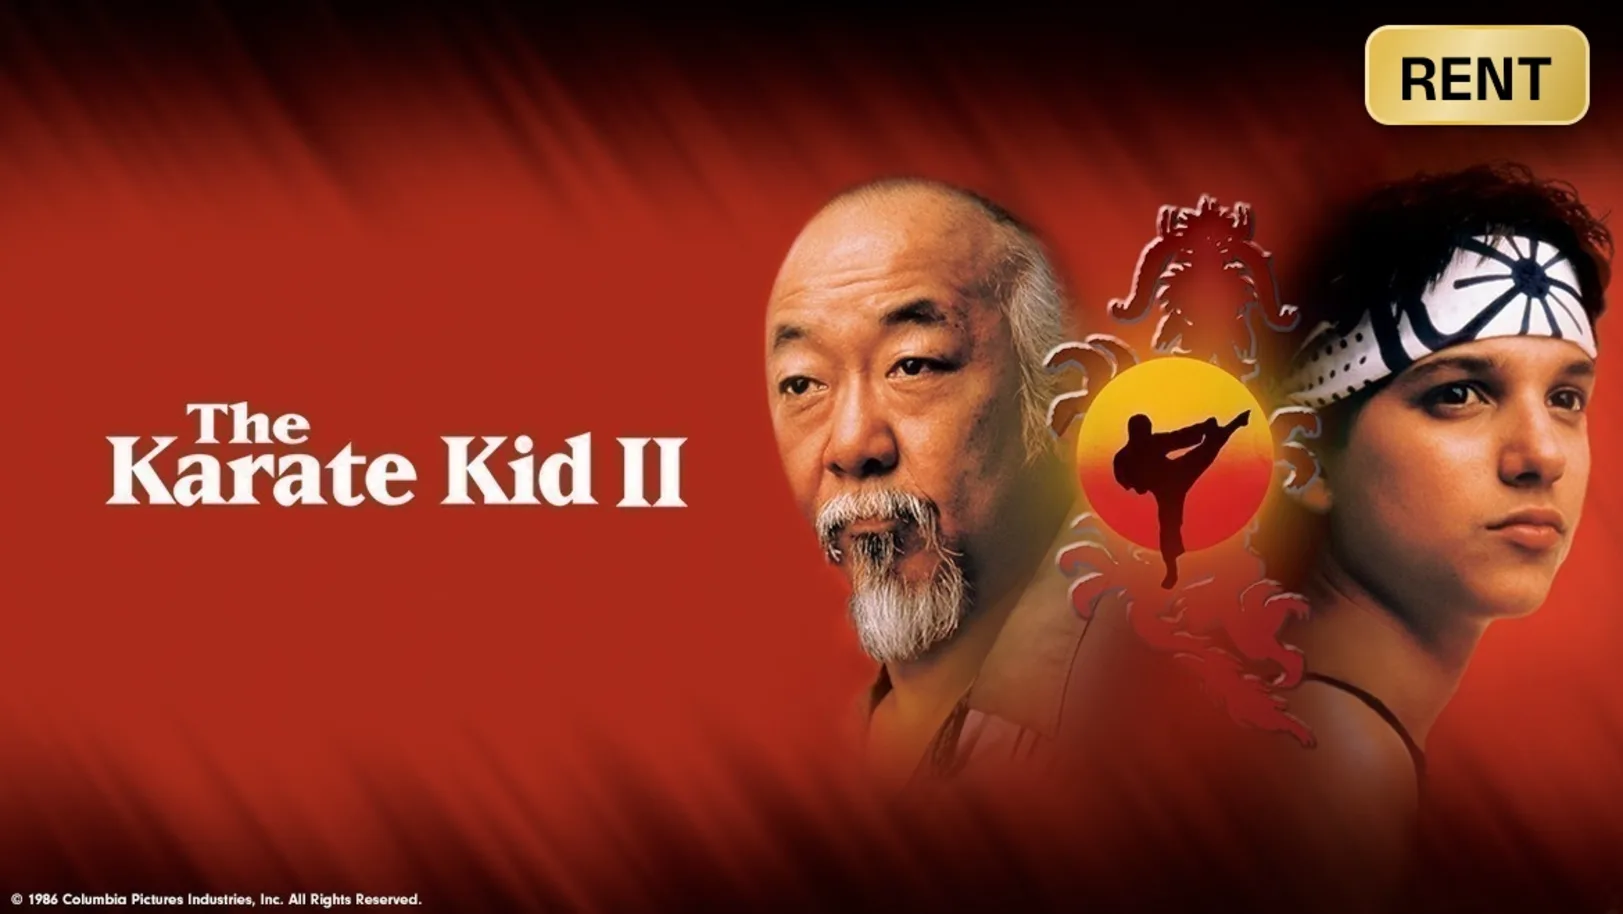 The Karate Kid Part II Movie